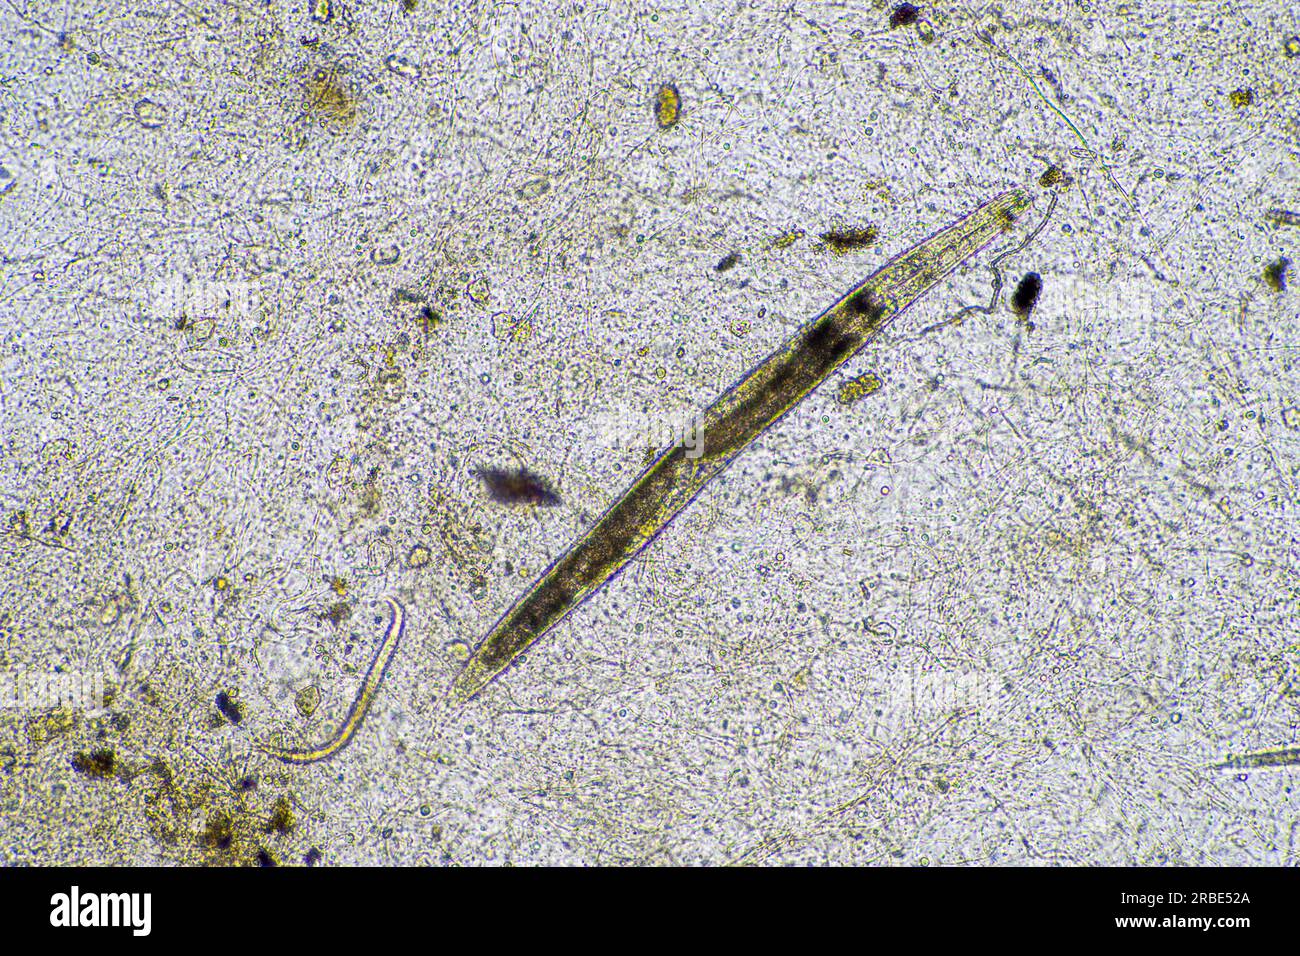 nematode al microscopio in laboratorio Foto Stock